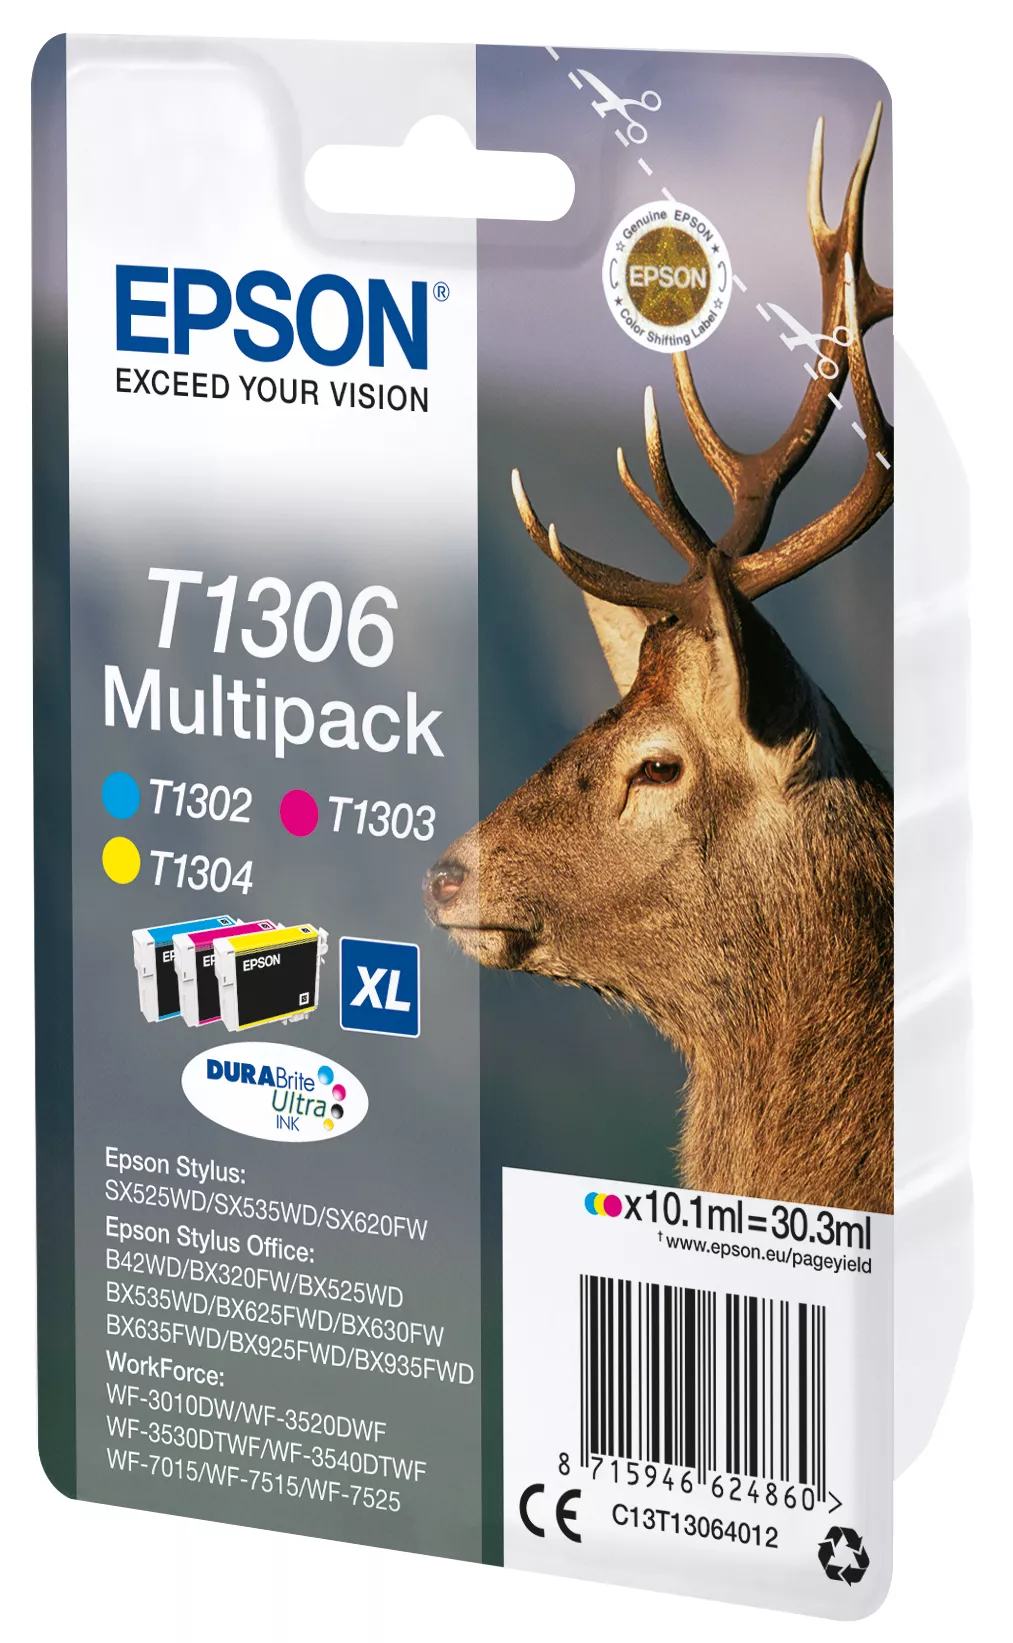 Vente EPSON T1306 cartouche d encre tricolore très haute Epson au meilleur prix - visuel 2